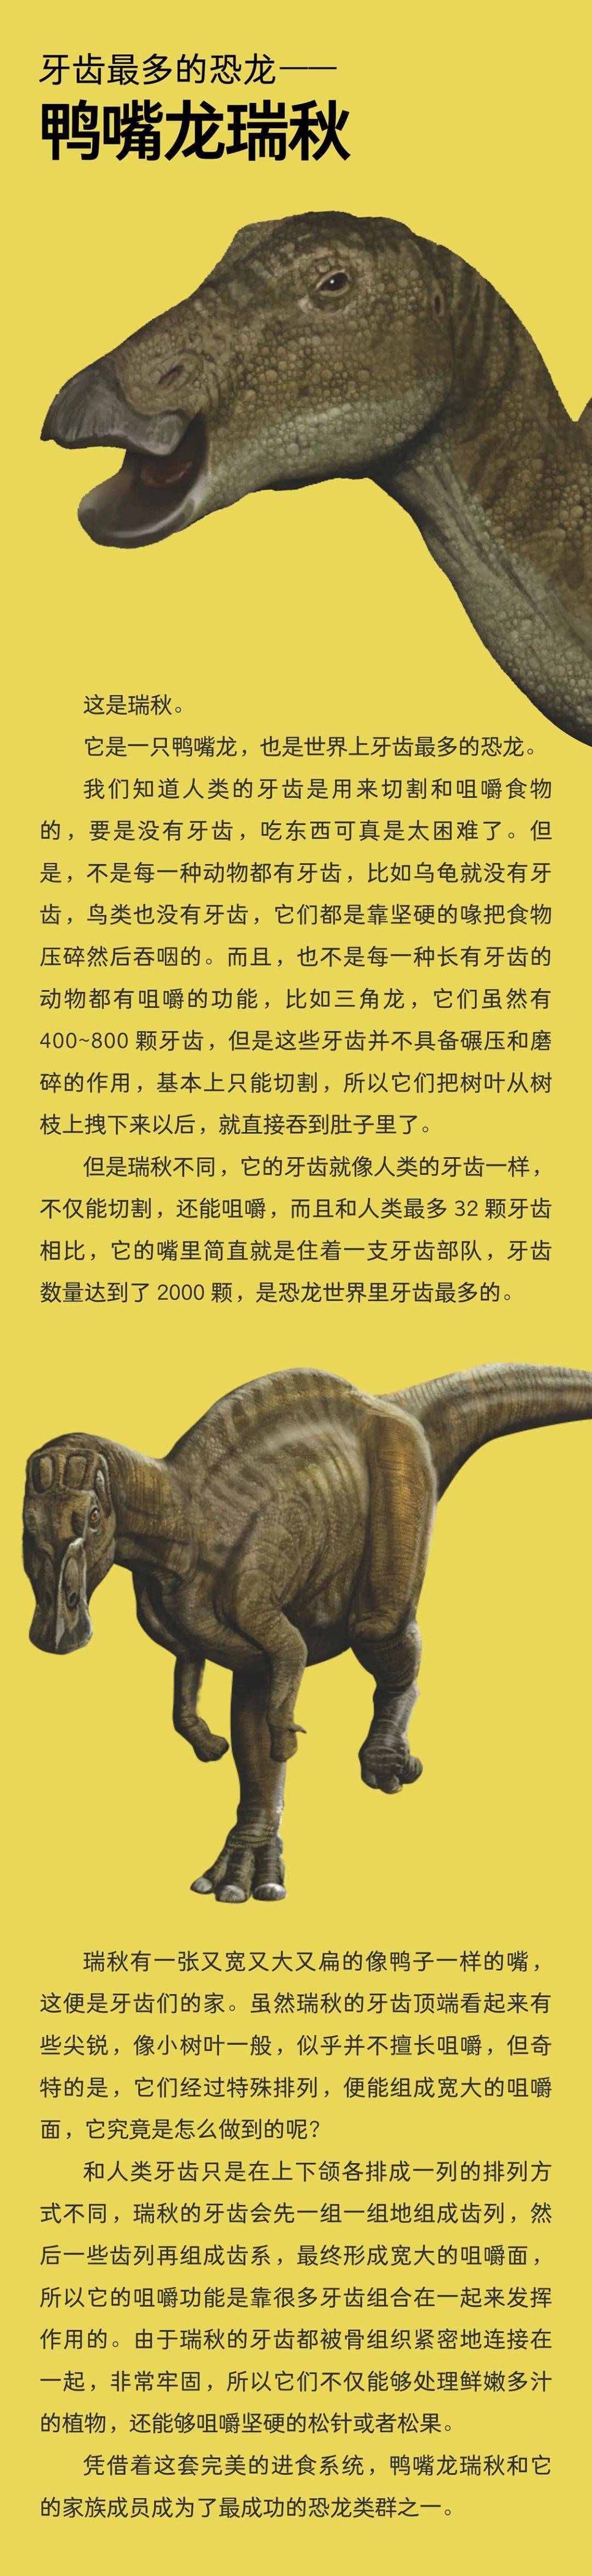 牙齿最多的恐龙——鸭嘴龙瑞秋